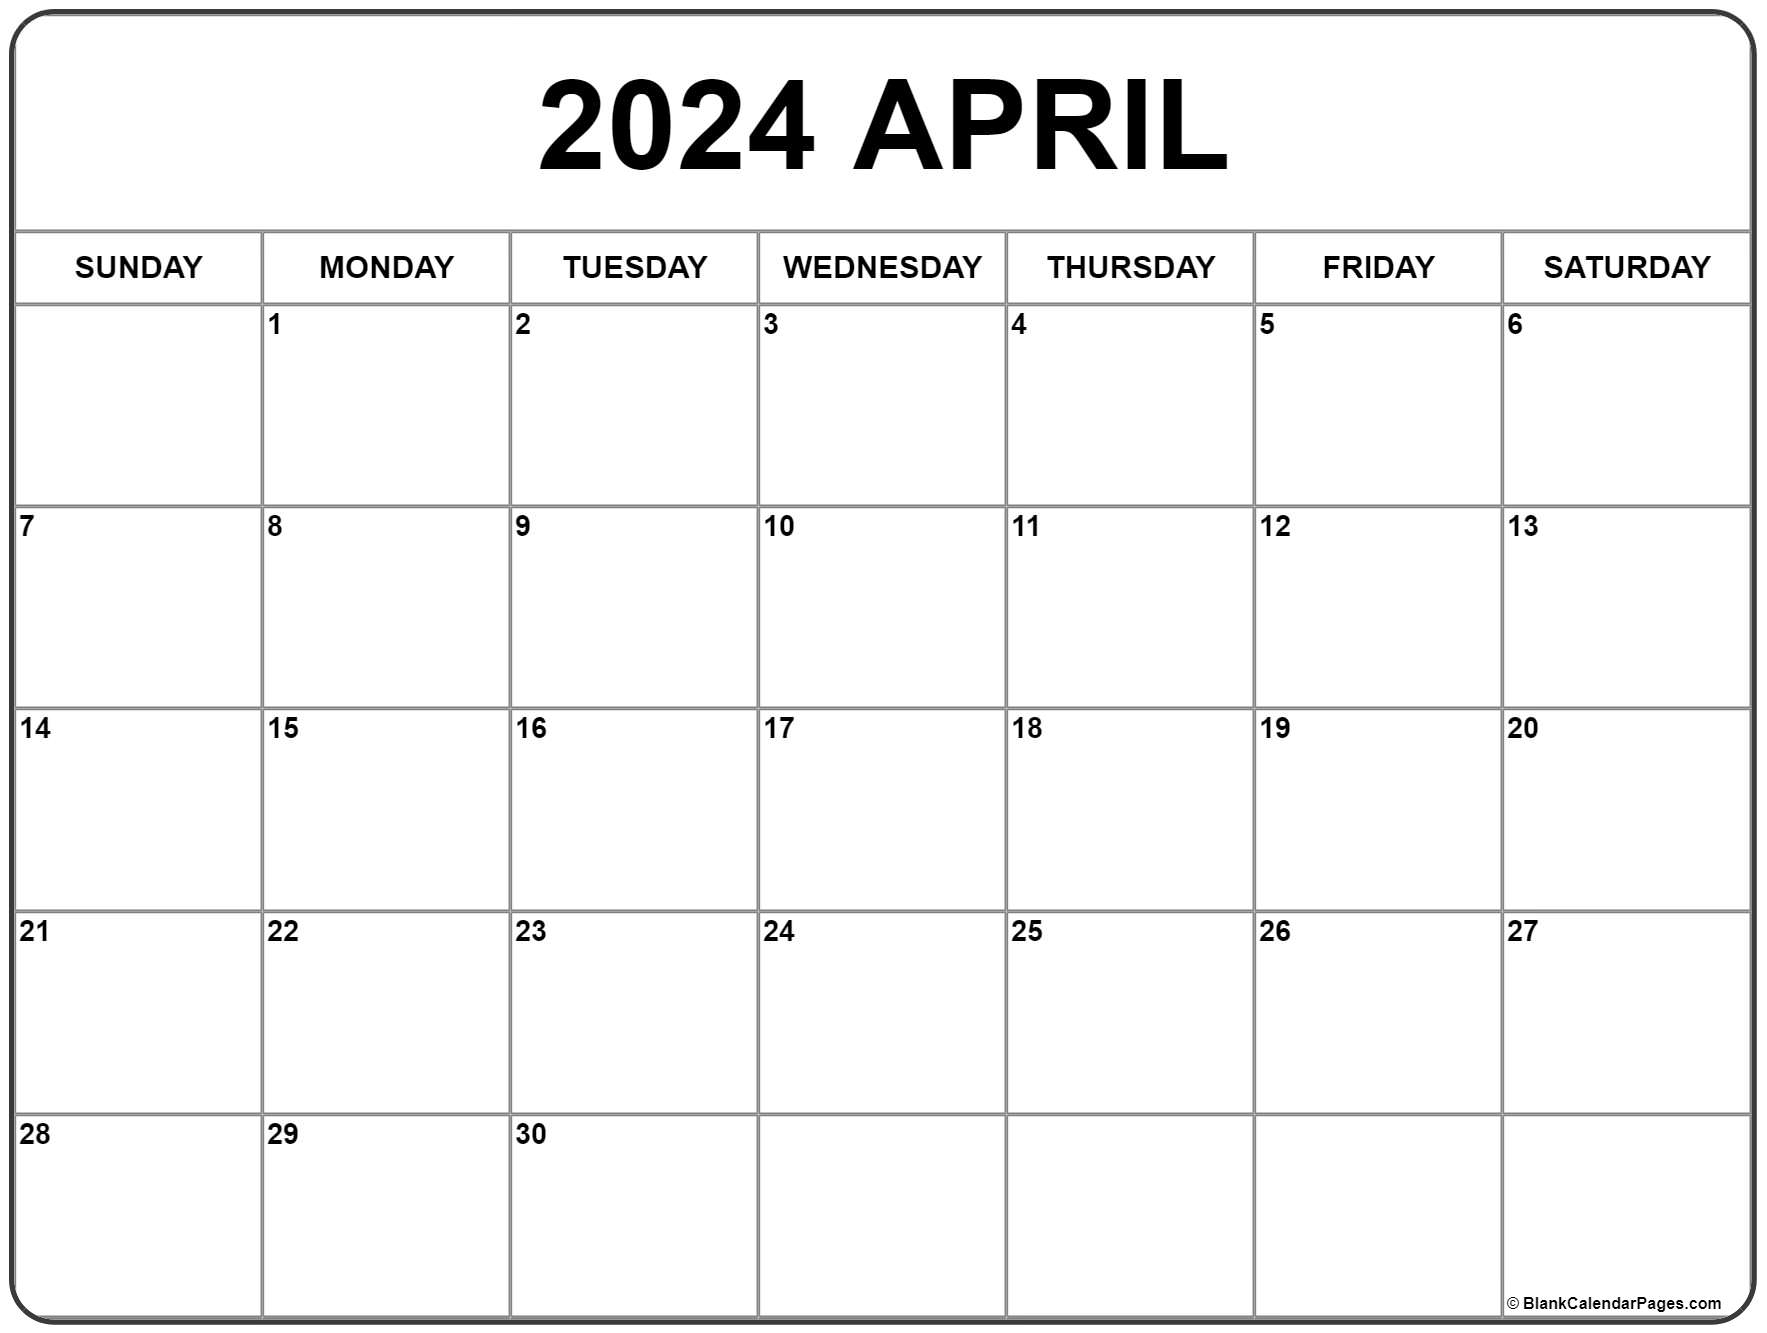 April 2024 Calendar | Free Printable Calendar for April 2024 Calendar Printable Free